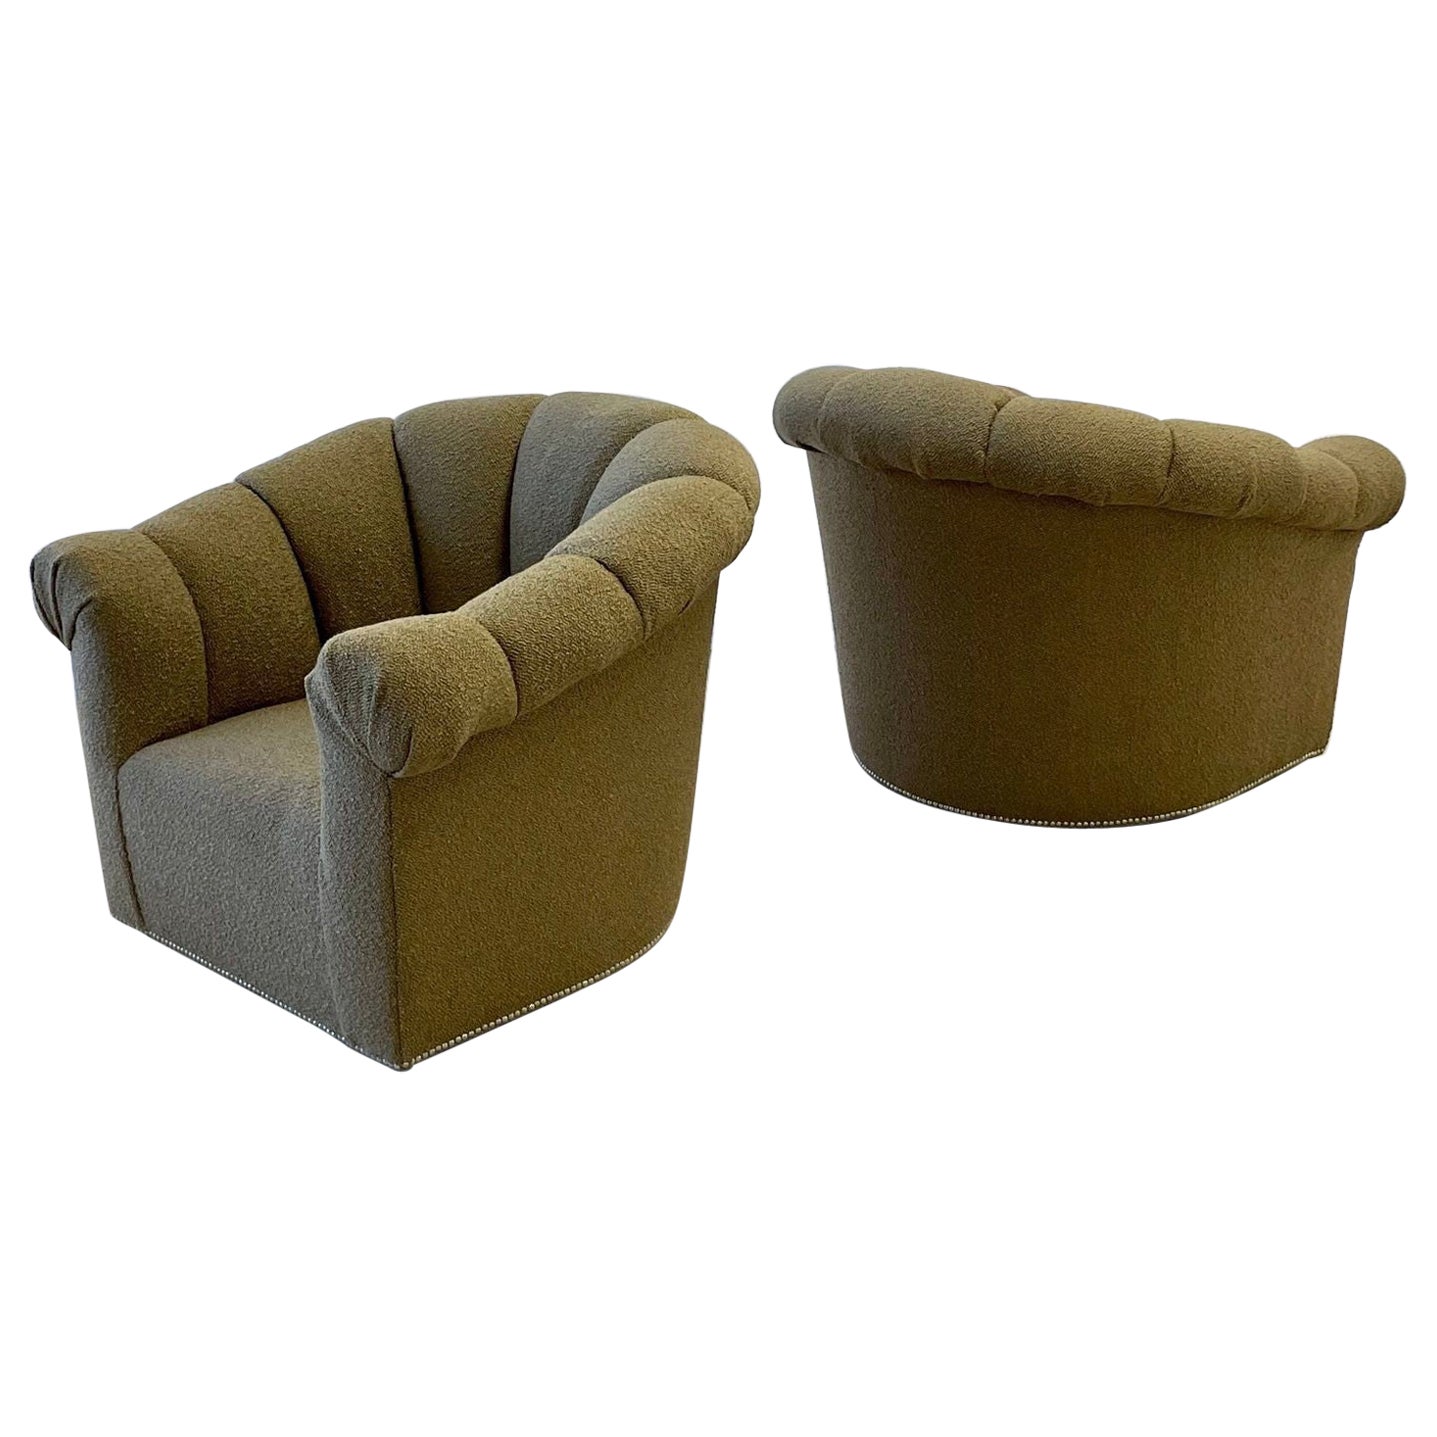 Paire de fauteuils pivotants / chaises longues / chaises tubulaires Boucle de Karl Springer, de style moderne du milieu du siècle dernier